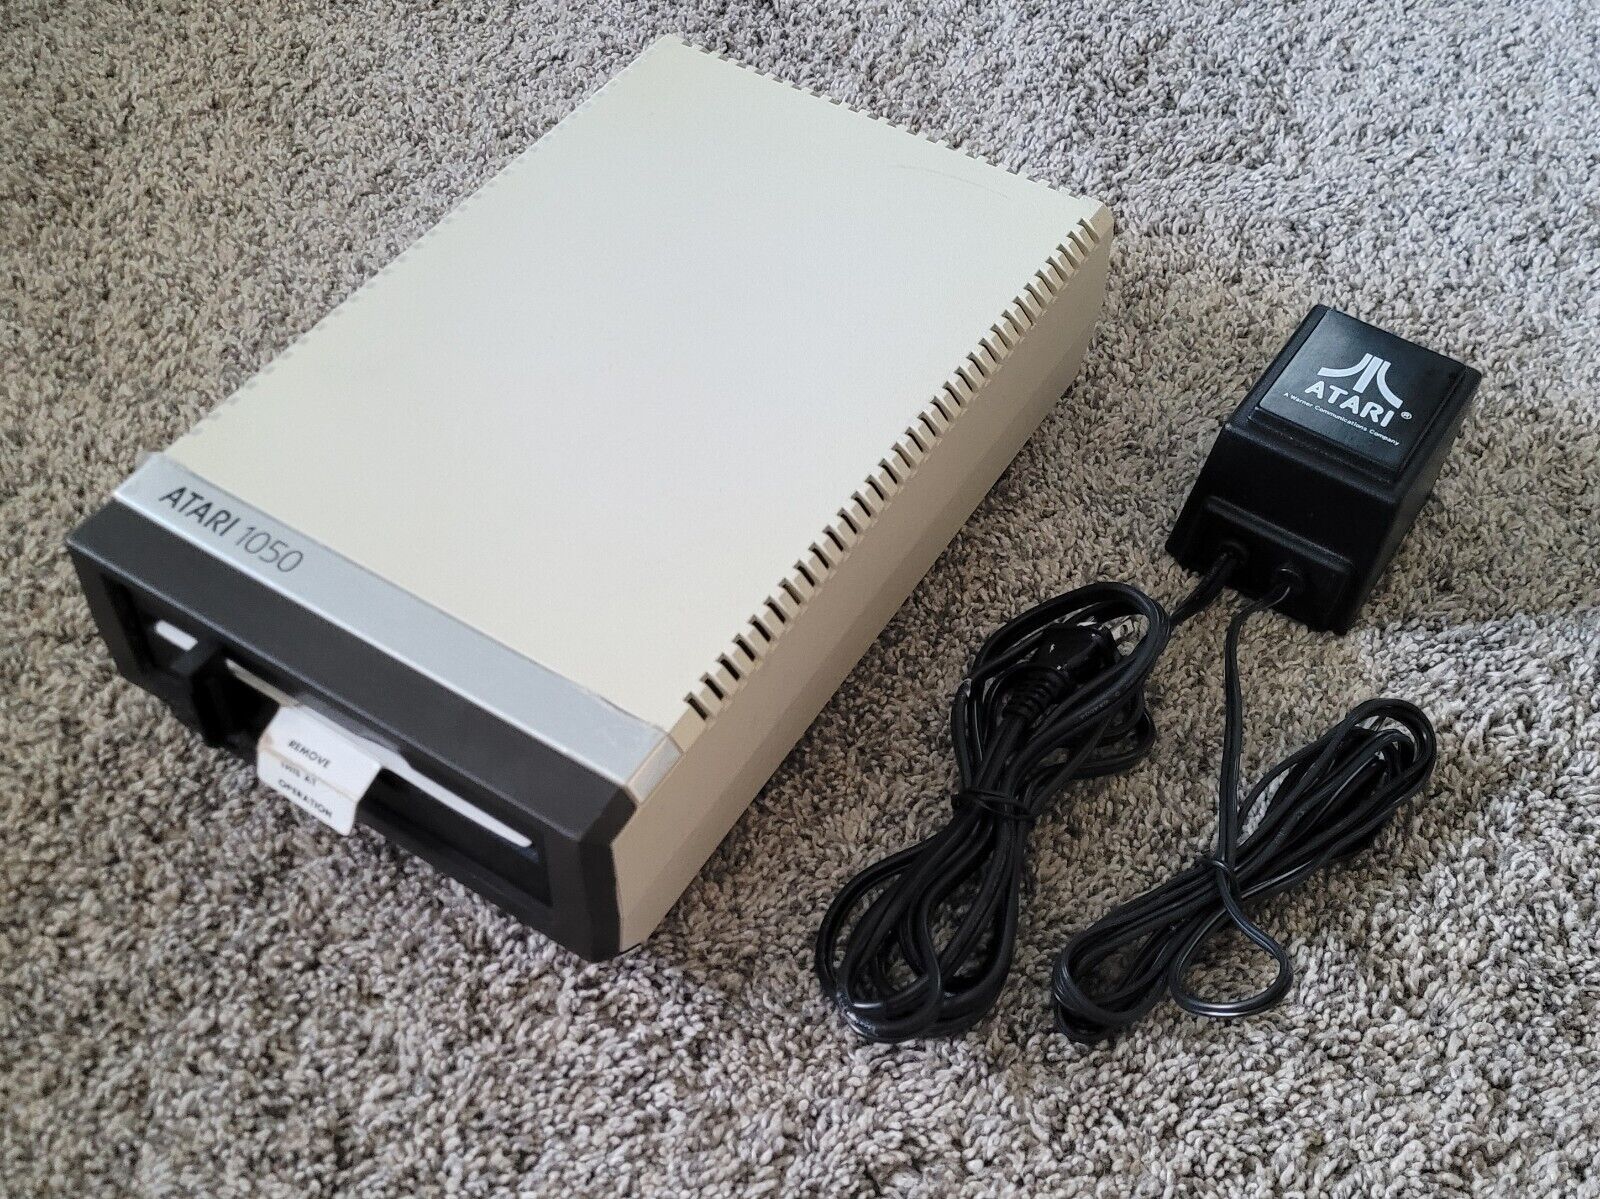 Atari 1050 5.25